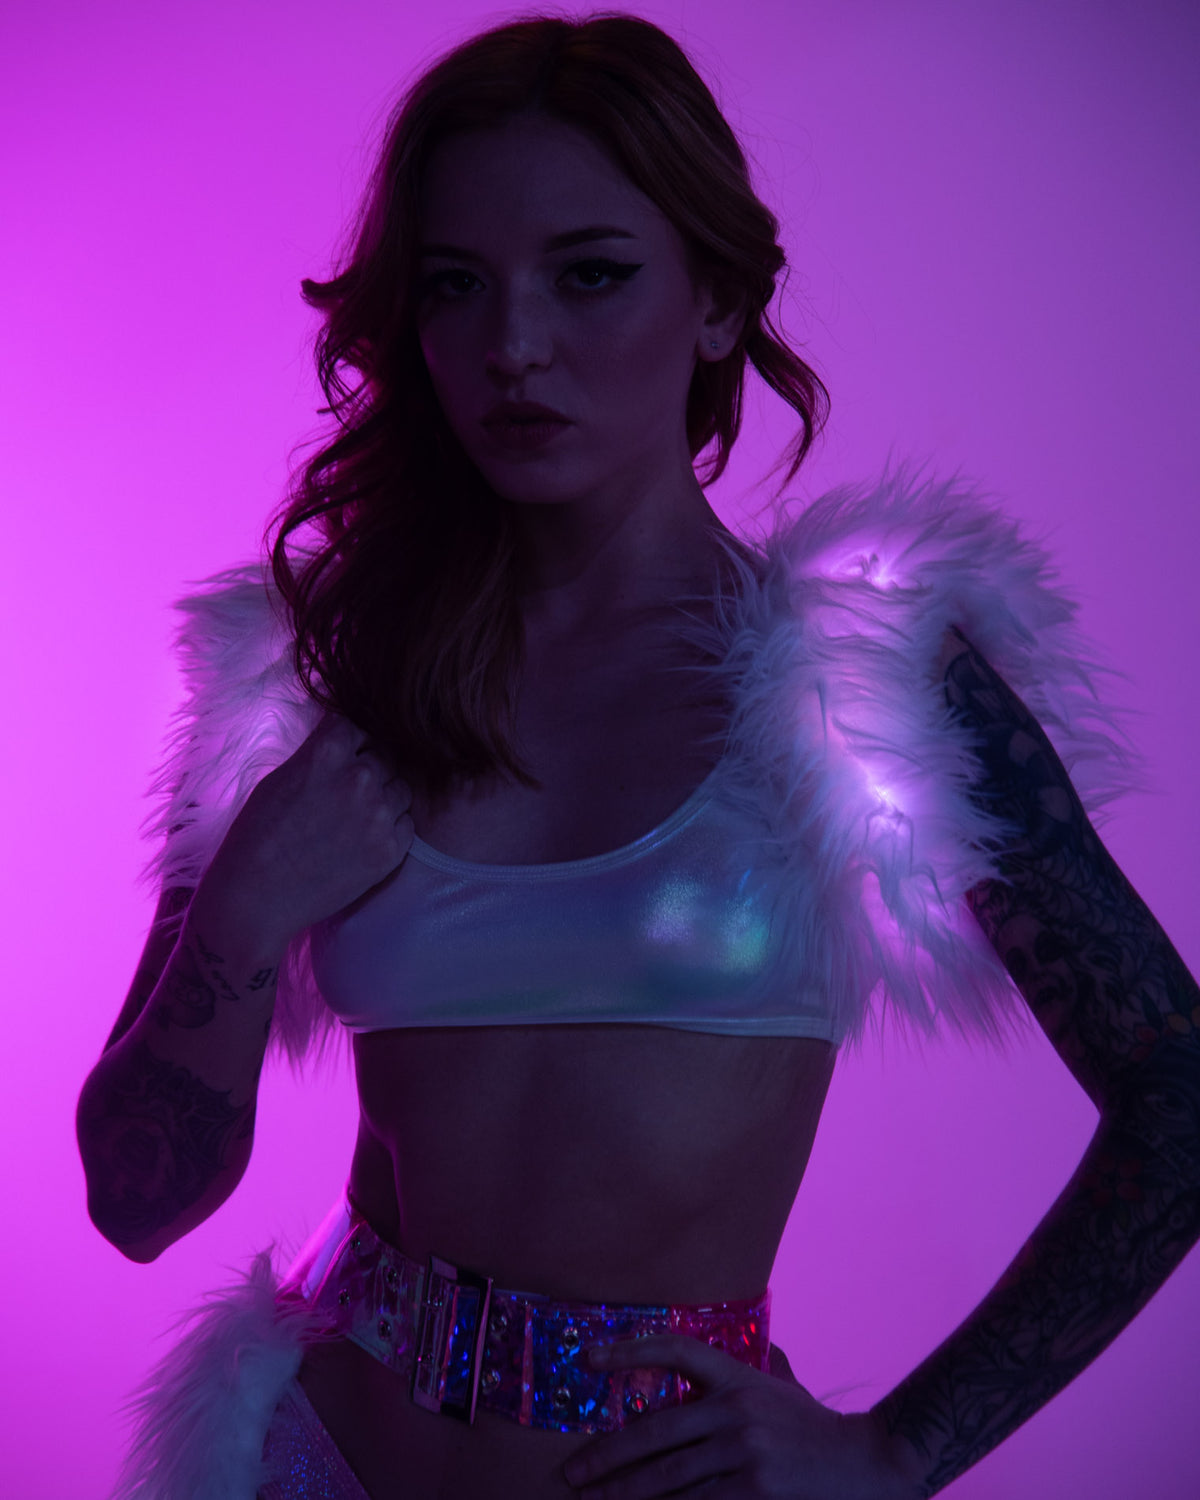 White Light-Up LED Faux Fur (Lights Up Pink) Shoulder Poofs